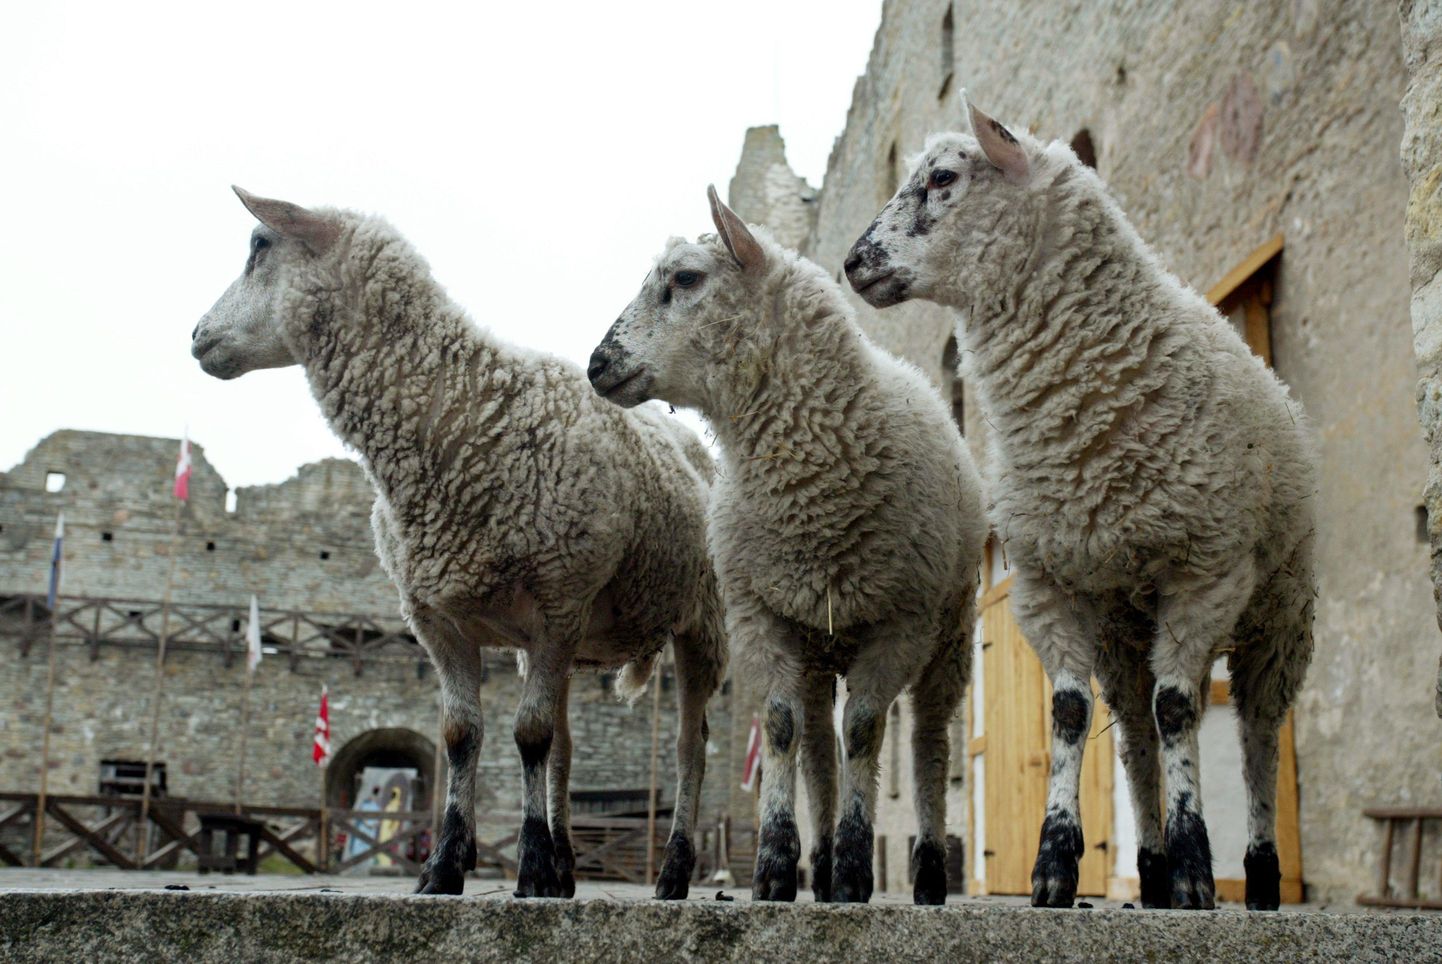 Lisaks etendusele saab jälgida kitsepere, lammaste, hanede ja kassi igapäeva askeldusi.